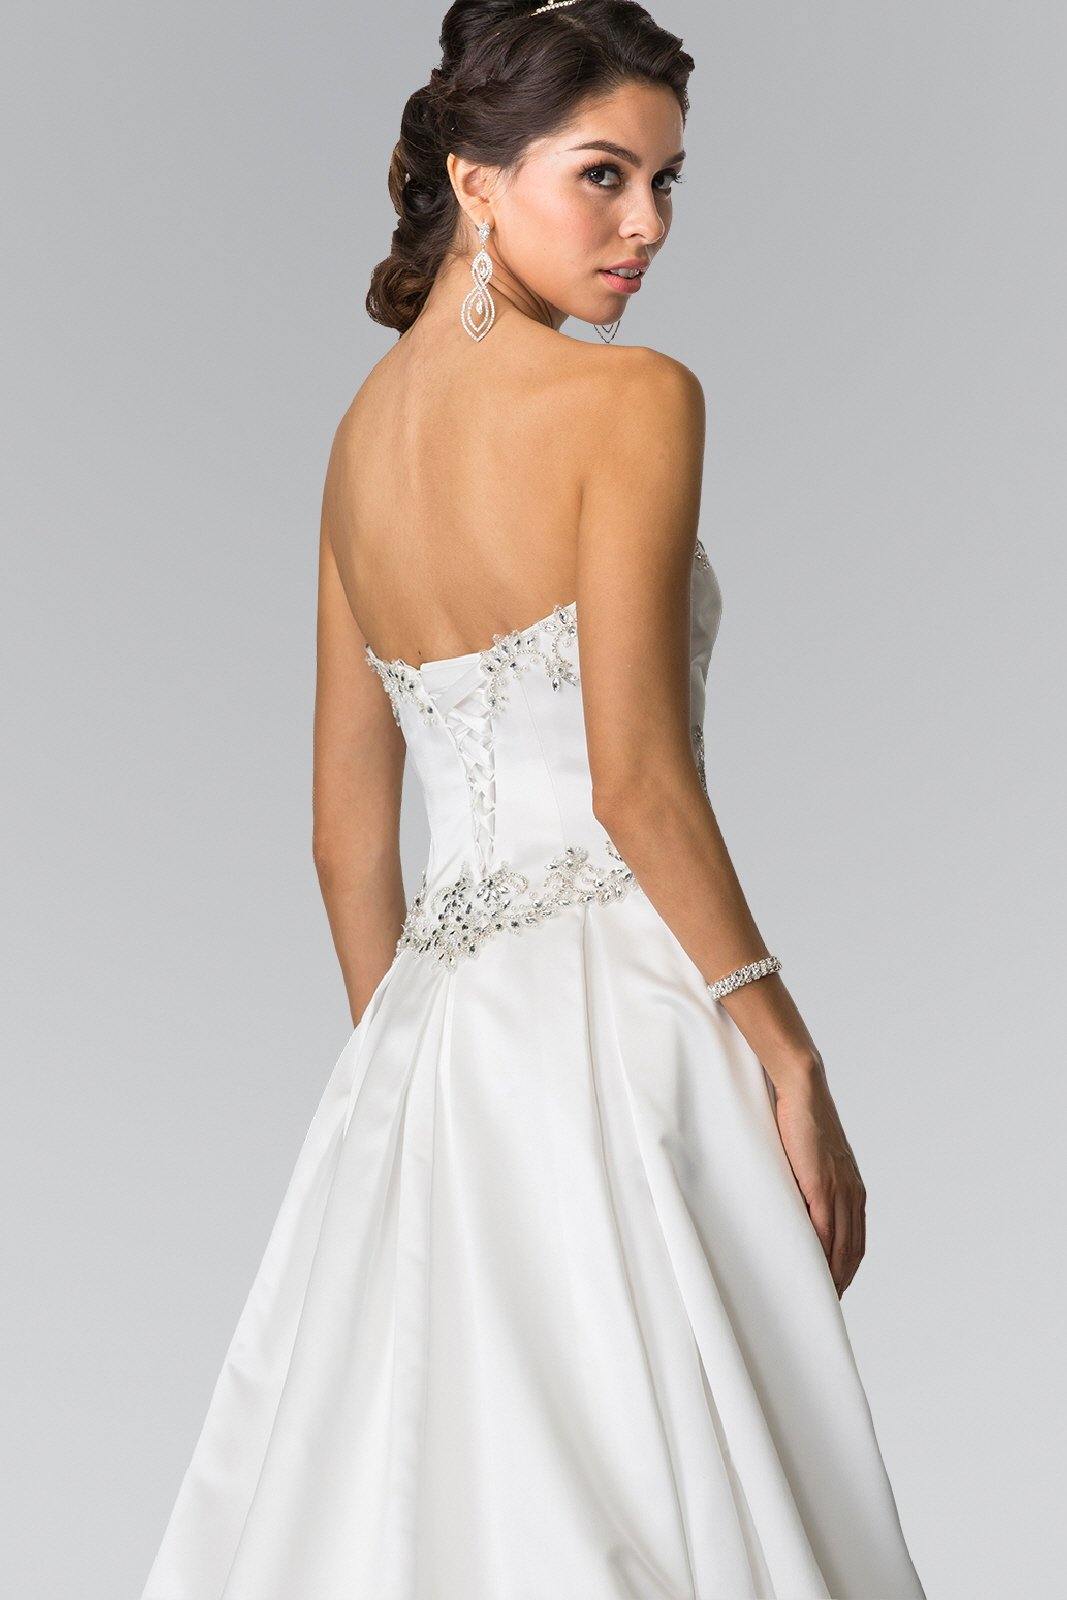 Long A-Line Wedding Dress - The Dress Outlet Elizabeth K